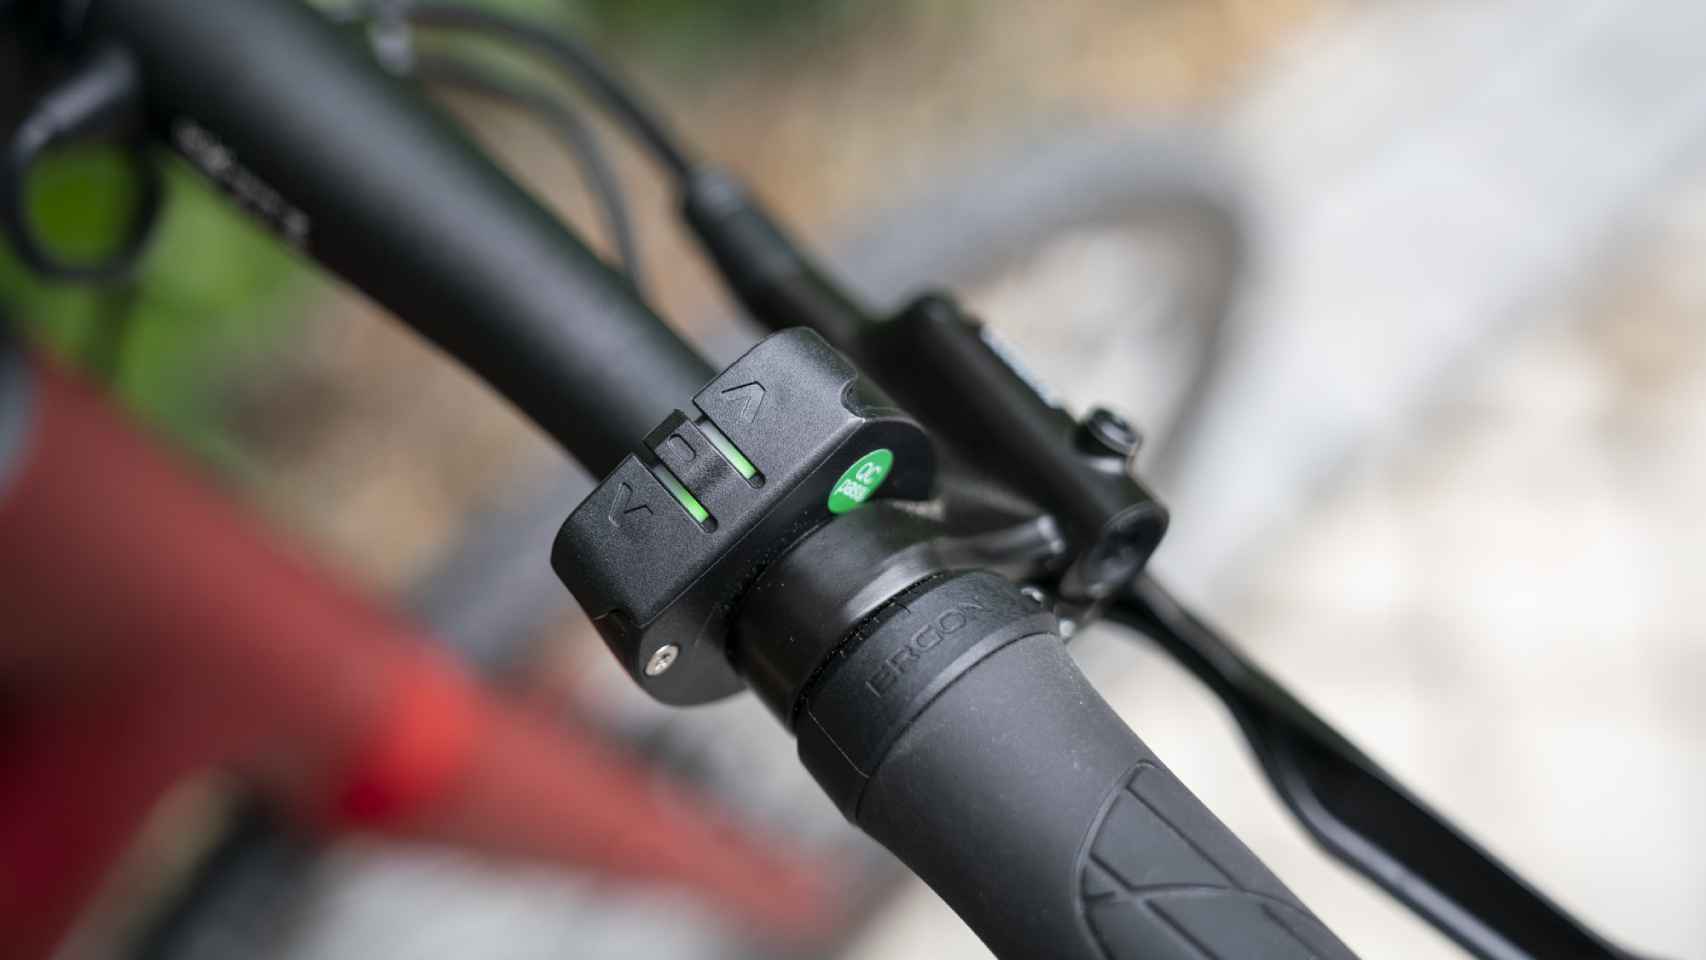 La bicicleta ofrece hasta tres modos de apoyo al pedaleo que se controlan en el manillar.